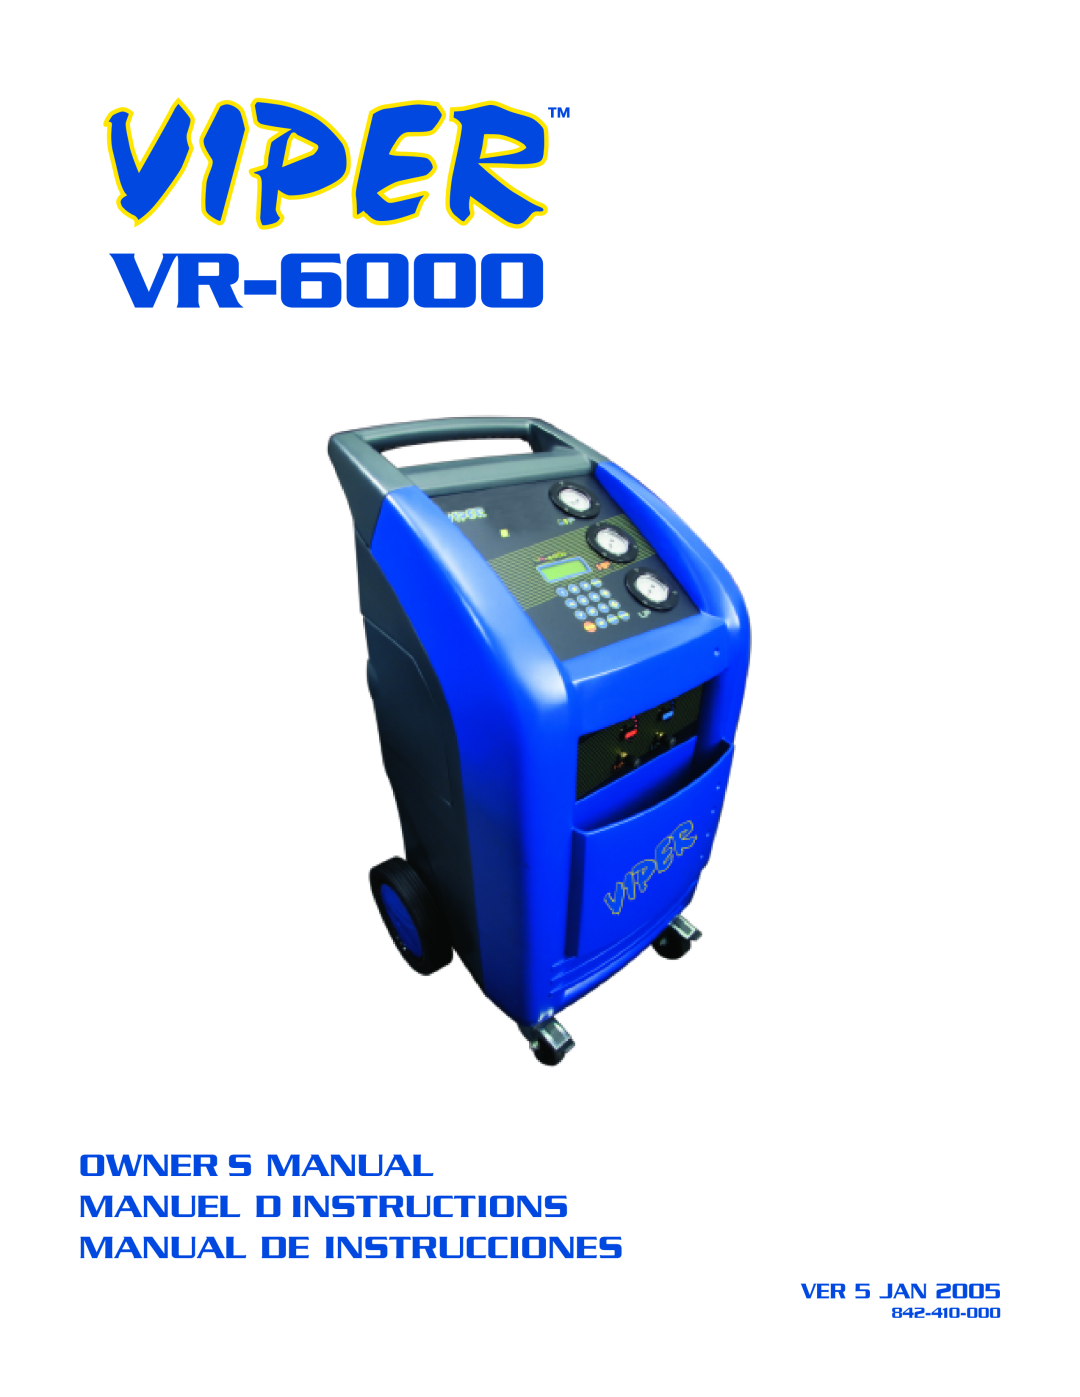 Viper VR-6000 owner manual Owners Manual Manuel Dinstructions, Manual De Instrucciones, VER 5 JAN, 842-410-000 